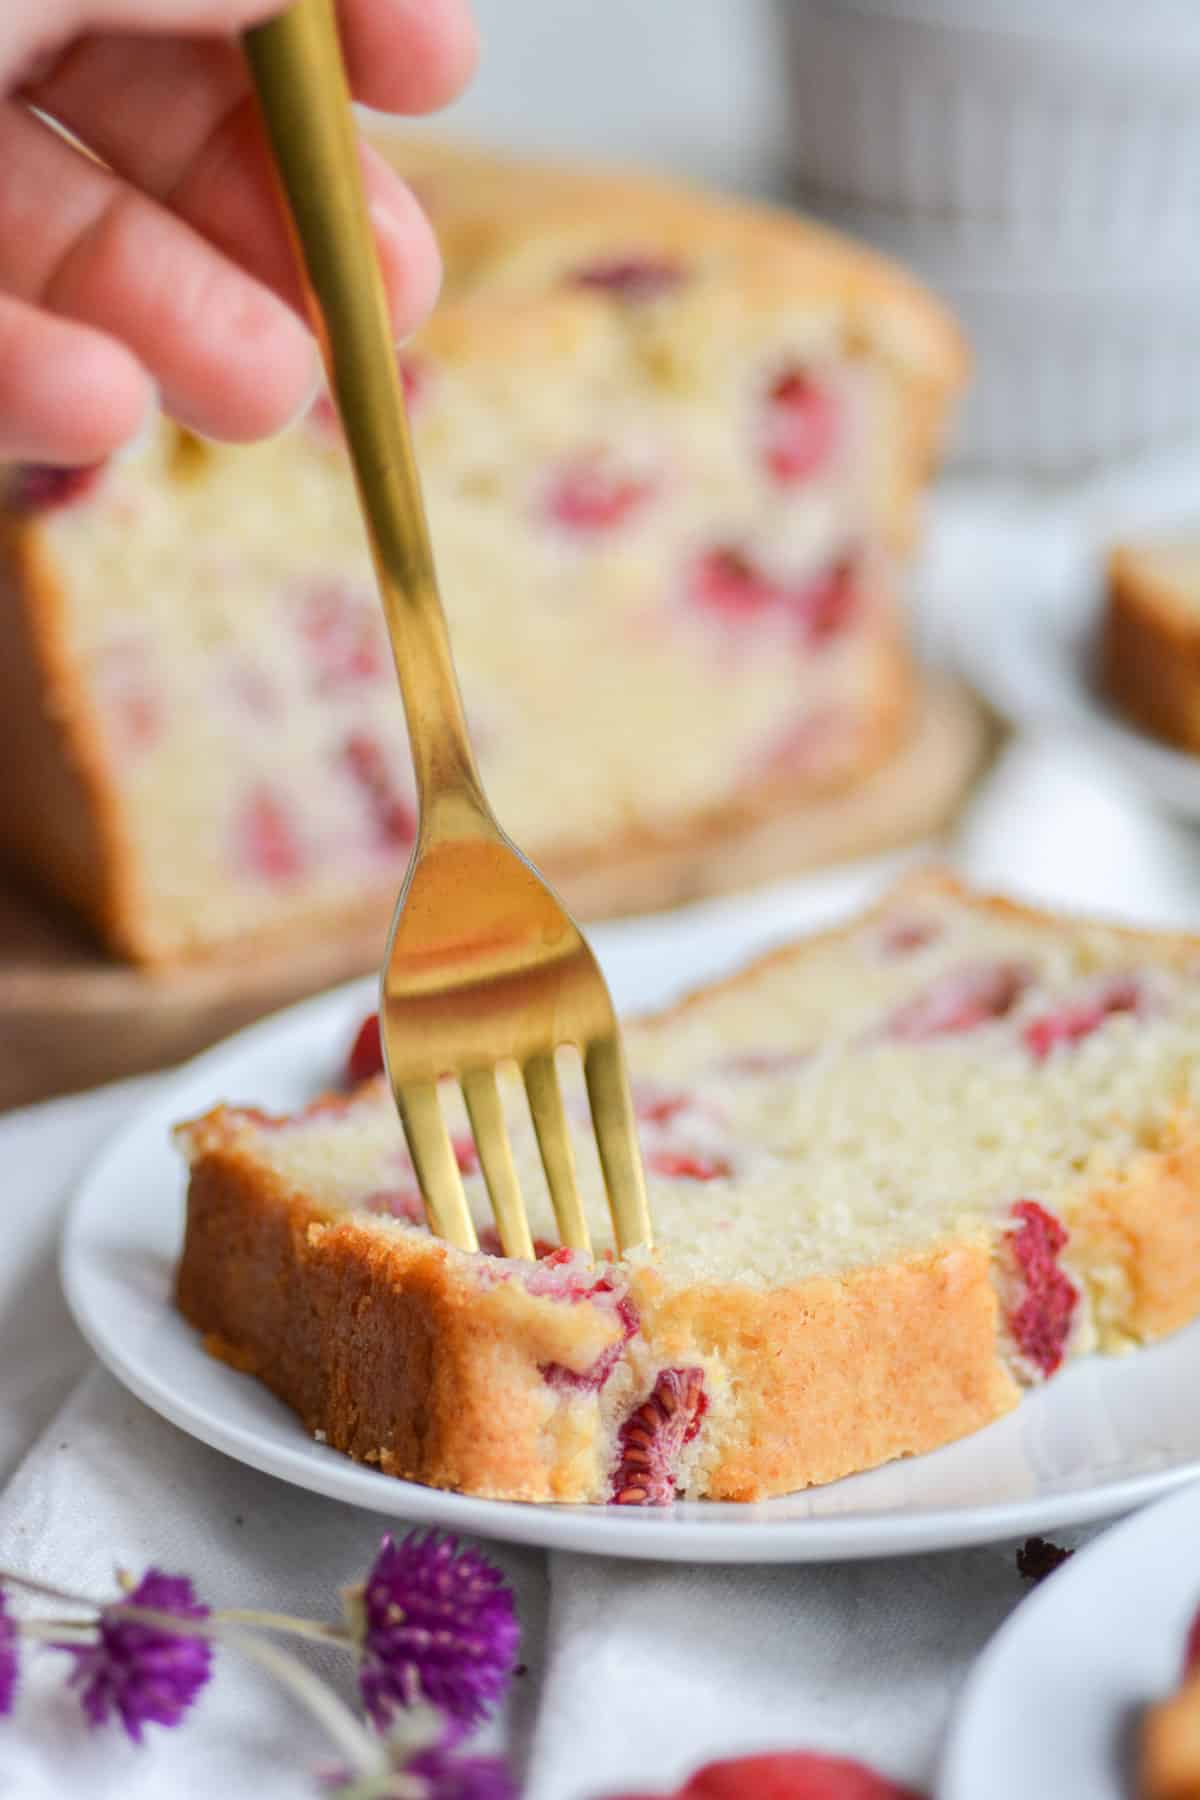 Gold fork in a slice of Vegan raspberry lemon cake